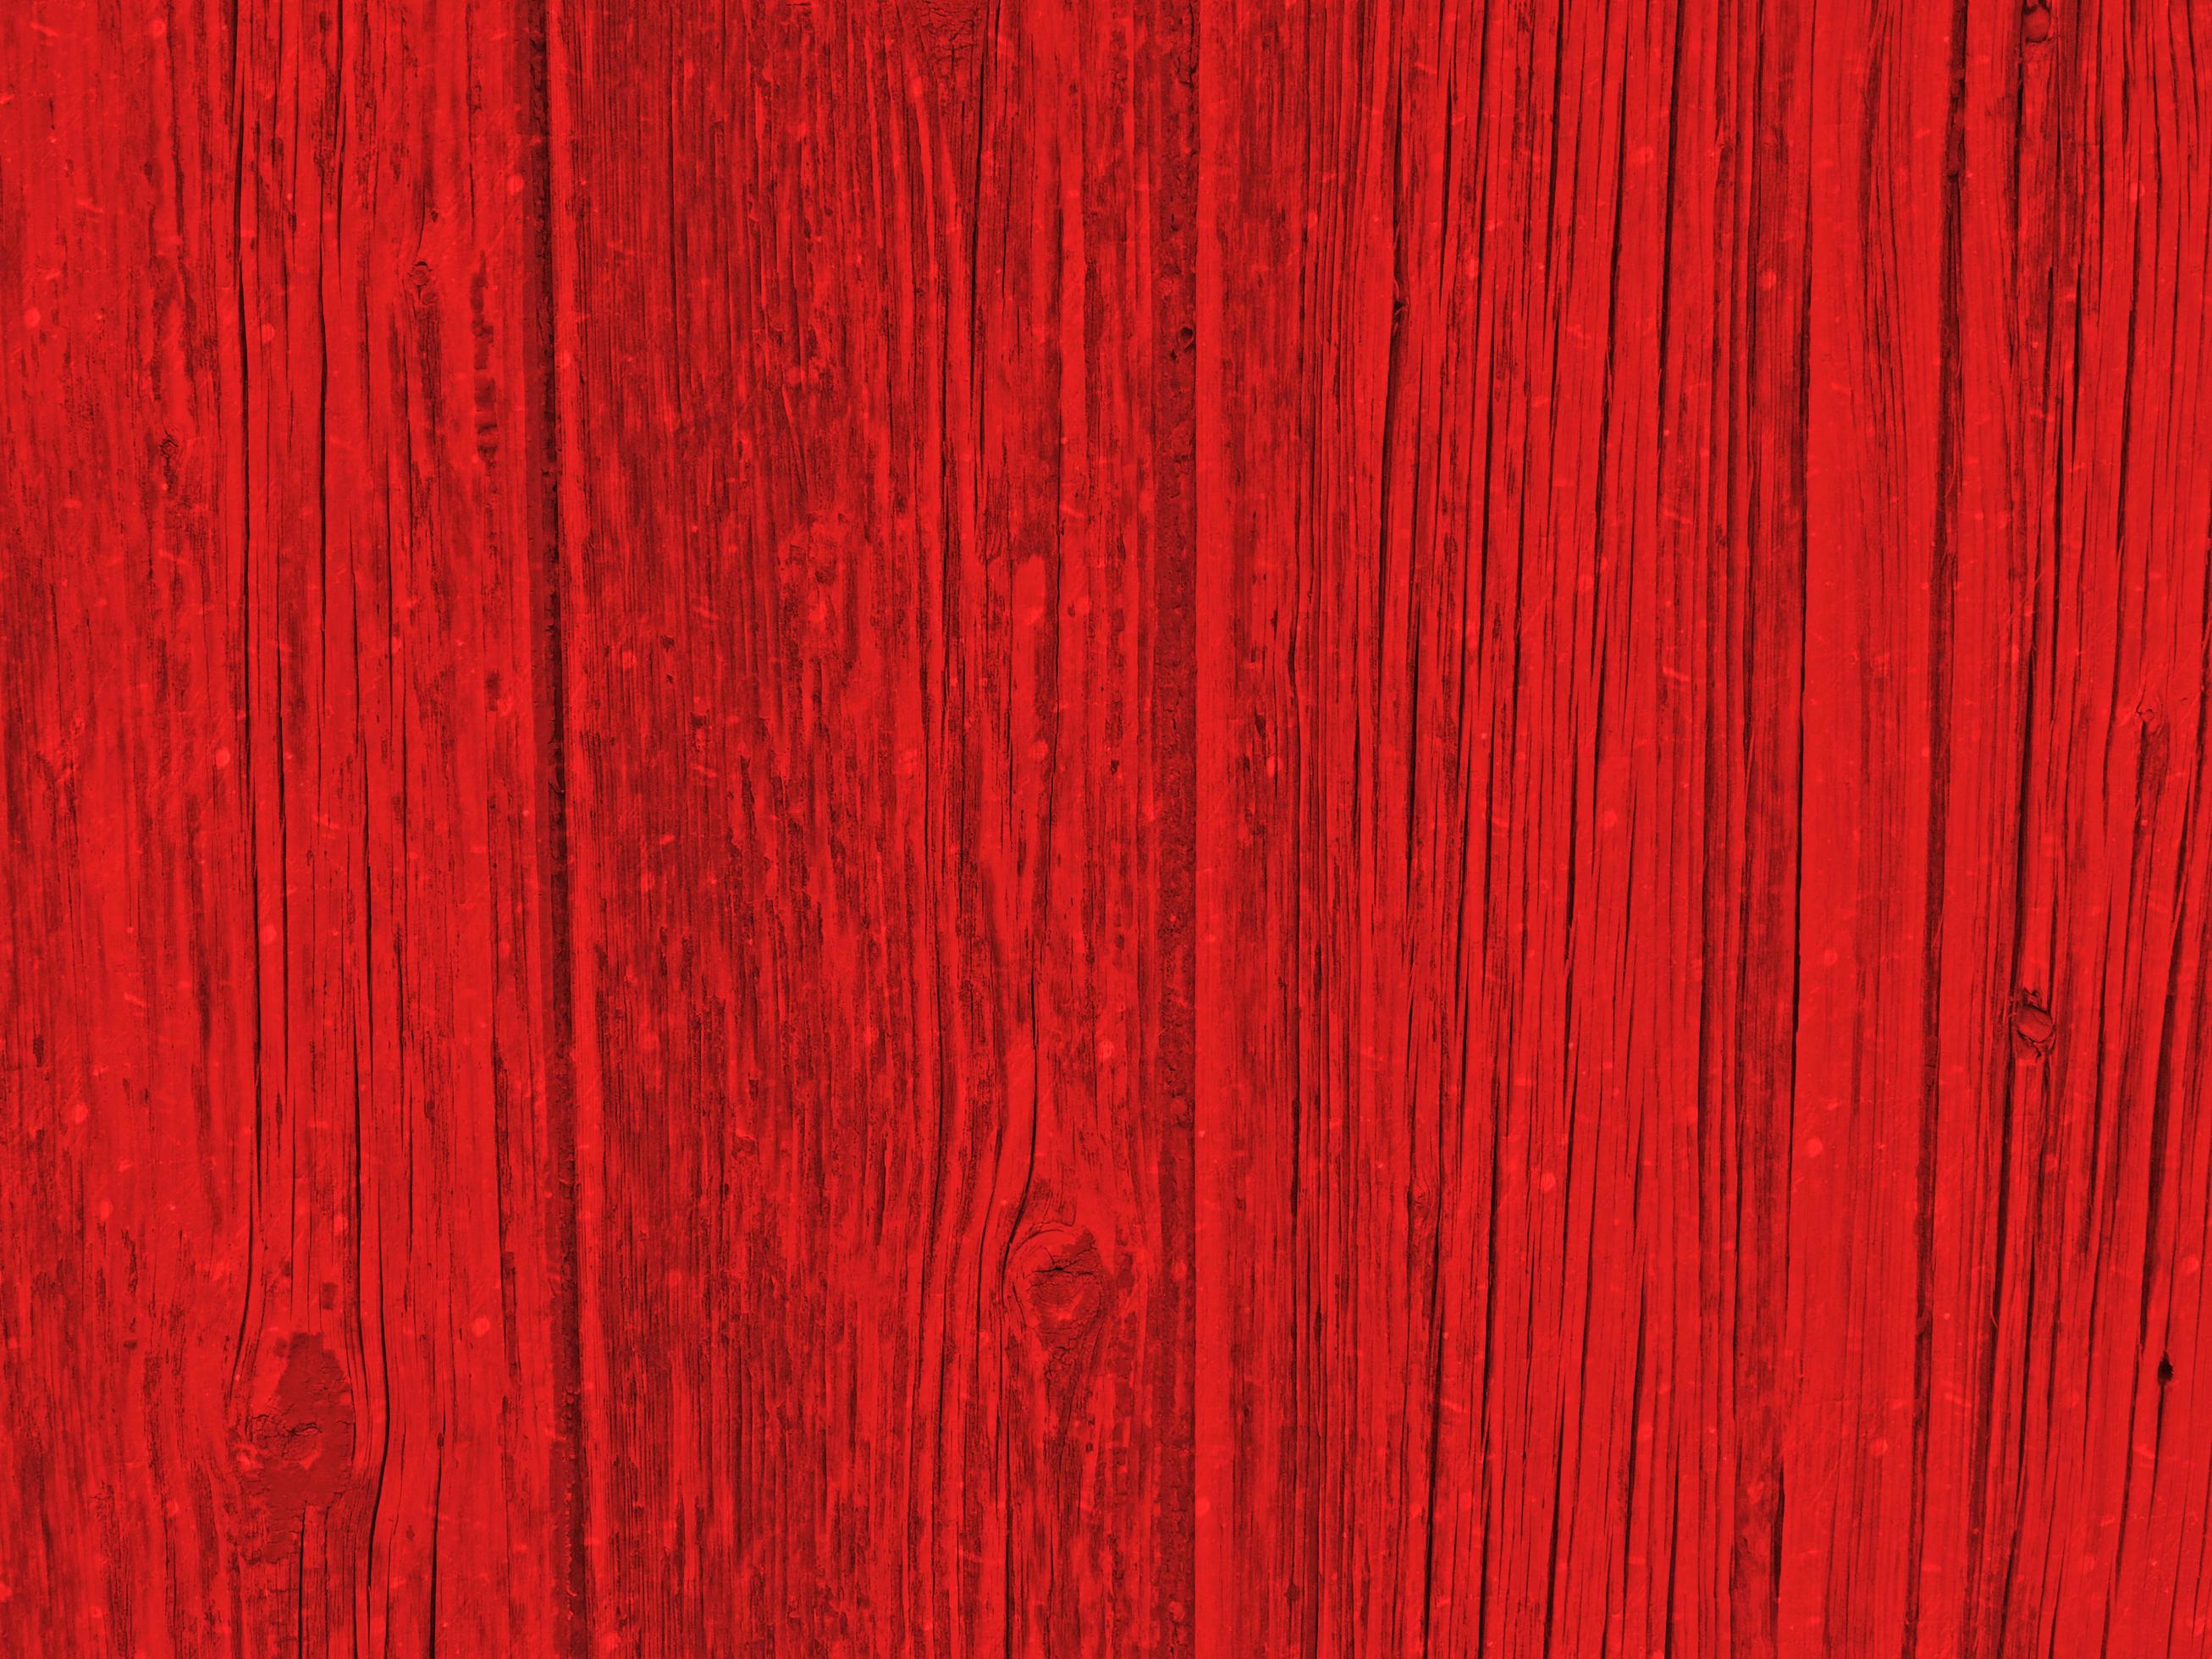 Ván gỗ đỏ: Sử dụng ván gỗ đỏ để tạo lên một không gian đẹp mắt và sang trọng. Màu đỏ đậm tạo ra một điểm nhấn nổi bật giữa những tông màu nhạt, làm nổi bật sự sang trọng và độc đáo của thiết kế.